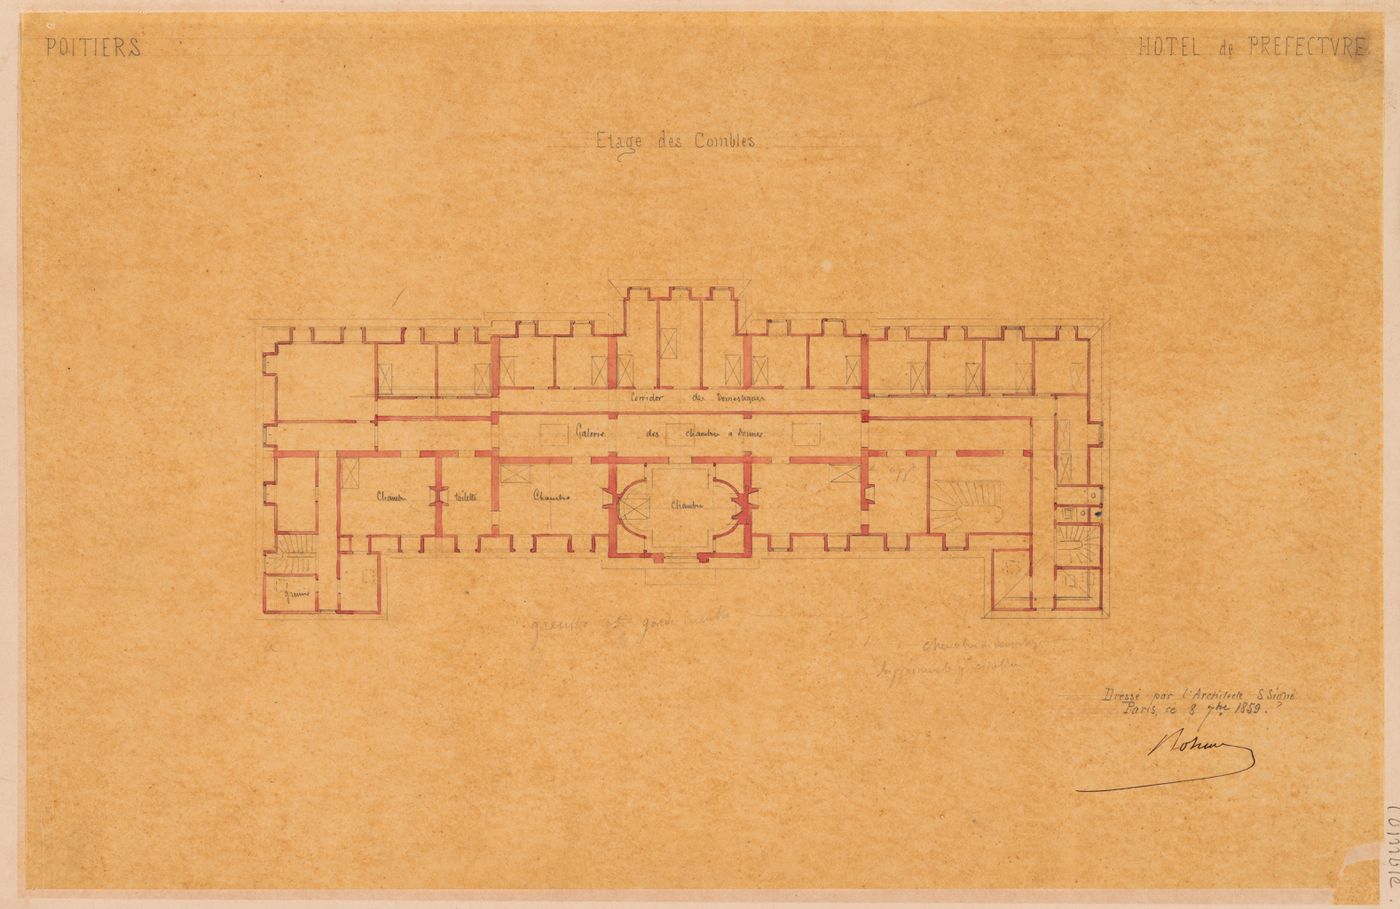 Project for a Hôtel de préfecture, Poitiers: Plan for the "étage des combles" for the Hôtel du Préfet